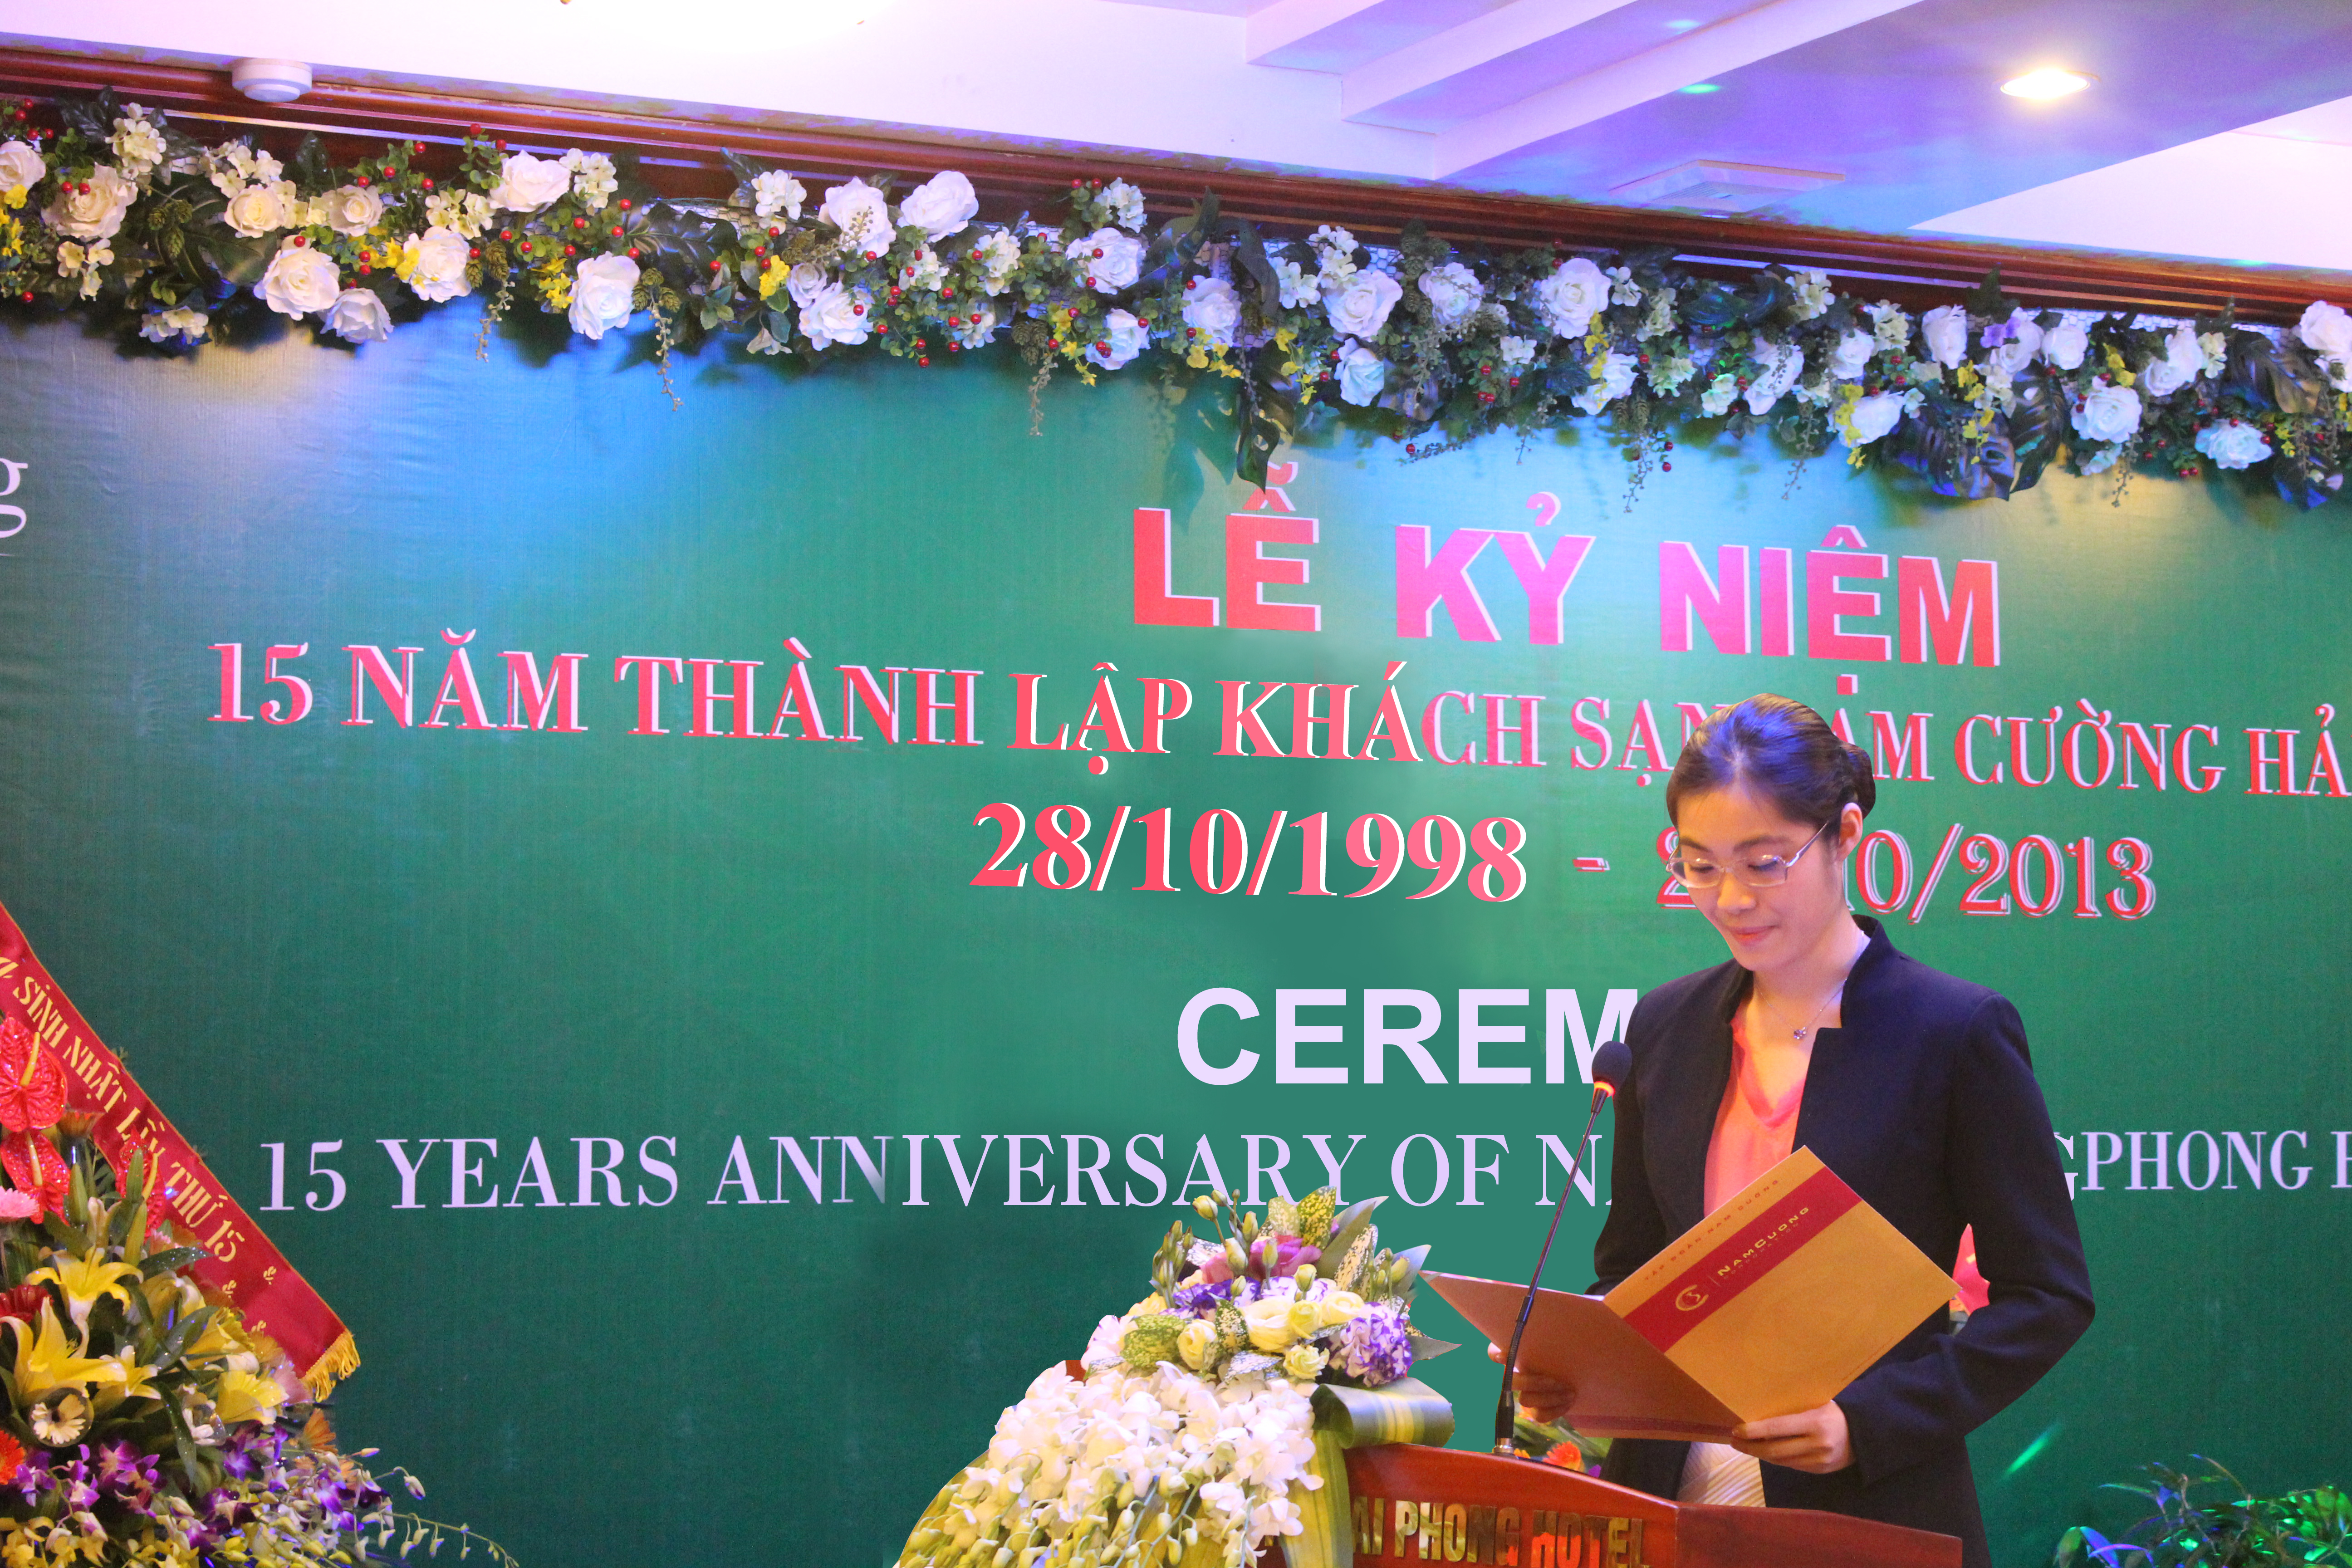 Trần Thị Quỳnh Ngọc hiện tại đang nắm cương vị Phó Chủ tịch Tập đoàn Nam Cường. Cô nắm giữ 11,11% cổ phần của tập đoàn này, tương đương khoảng 500 tỷ đồng.